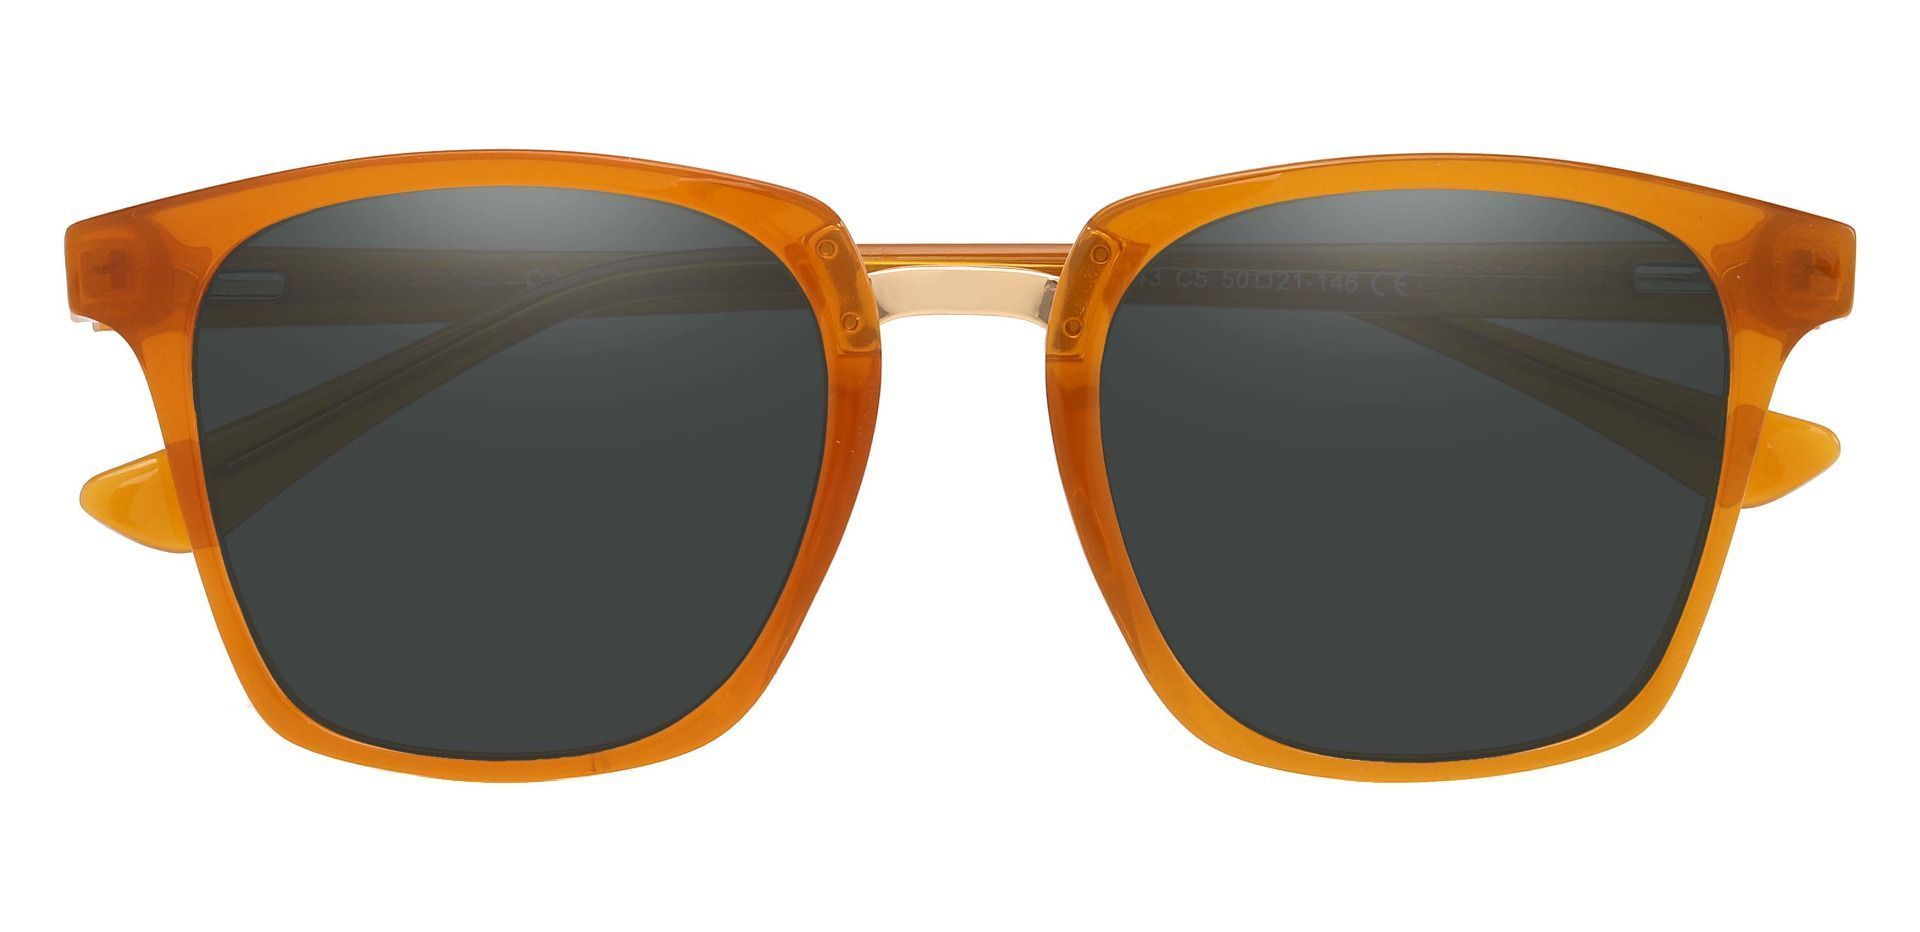 Delta Square Progressive Sunglasses - Orange Frame With Gray Lenses